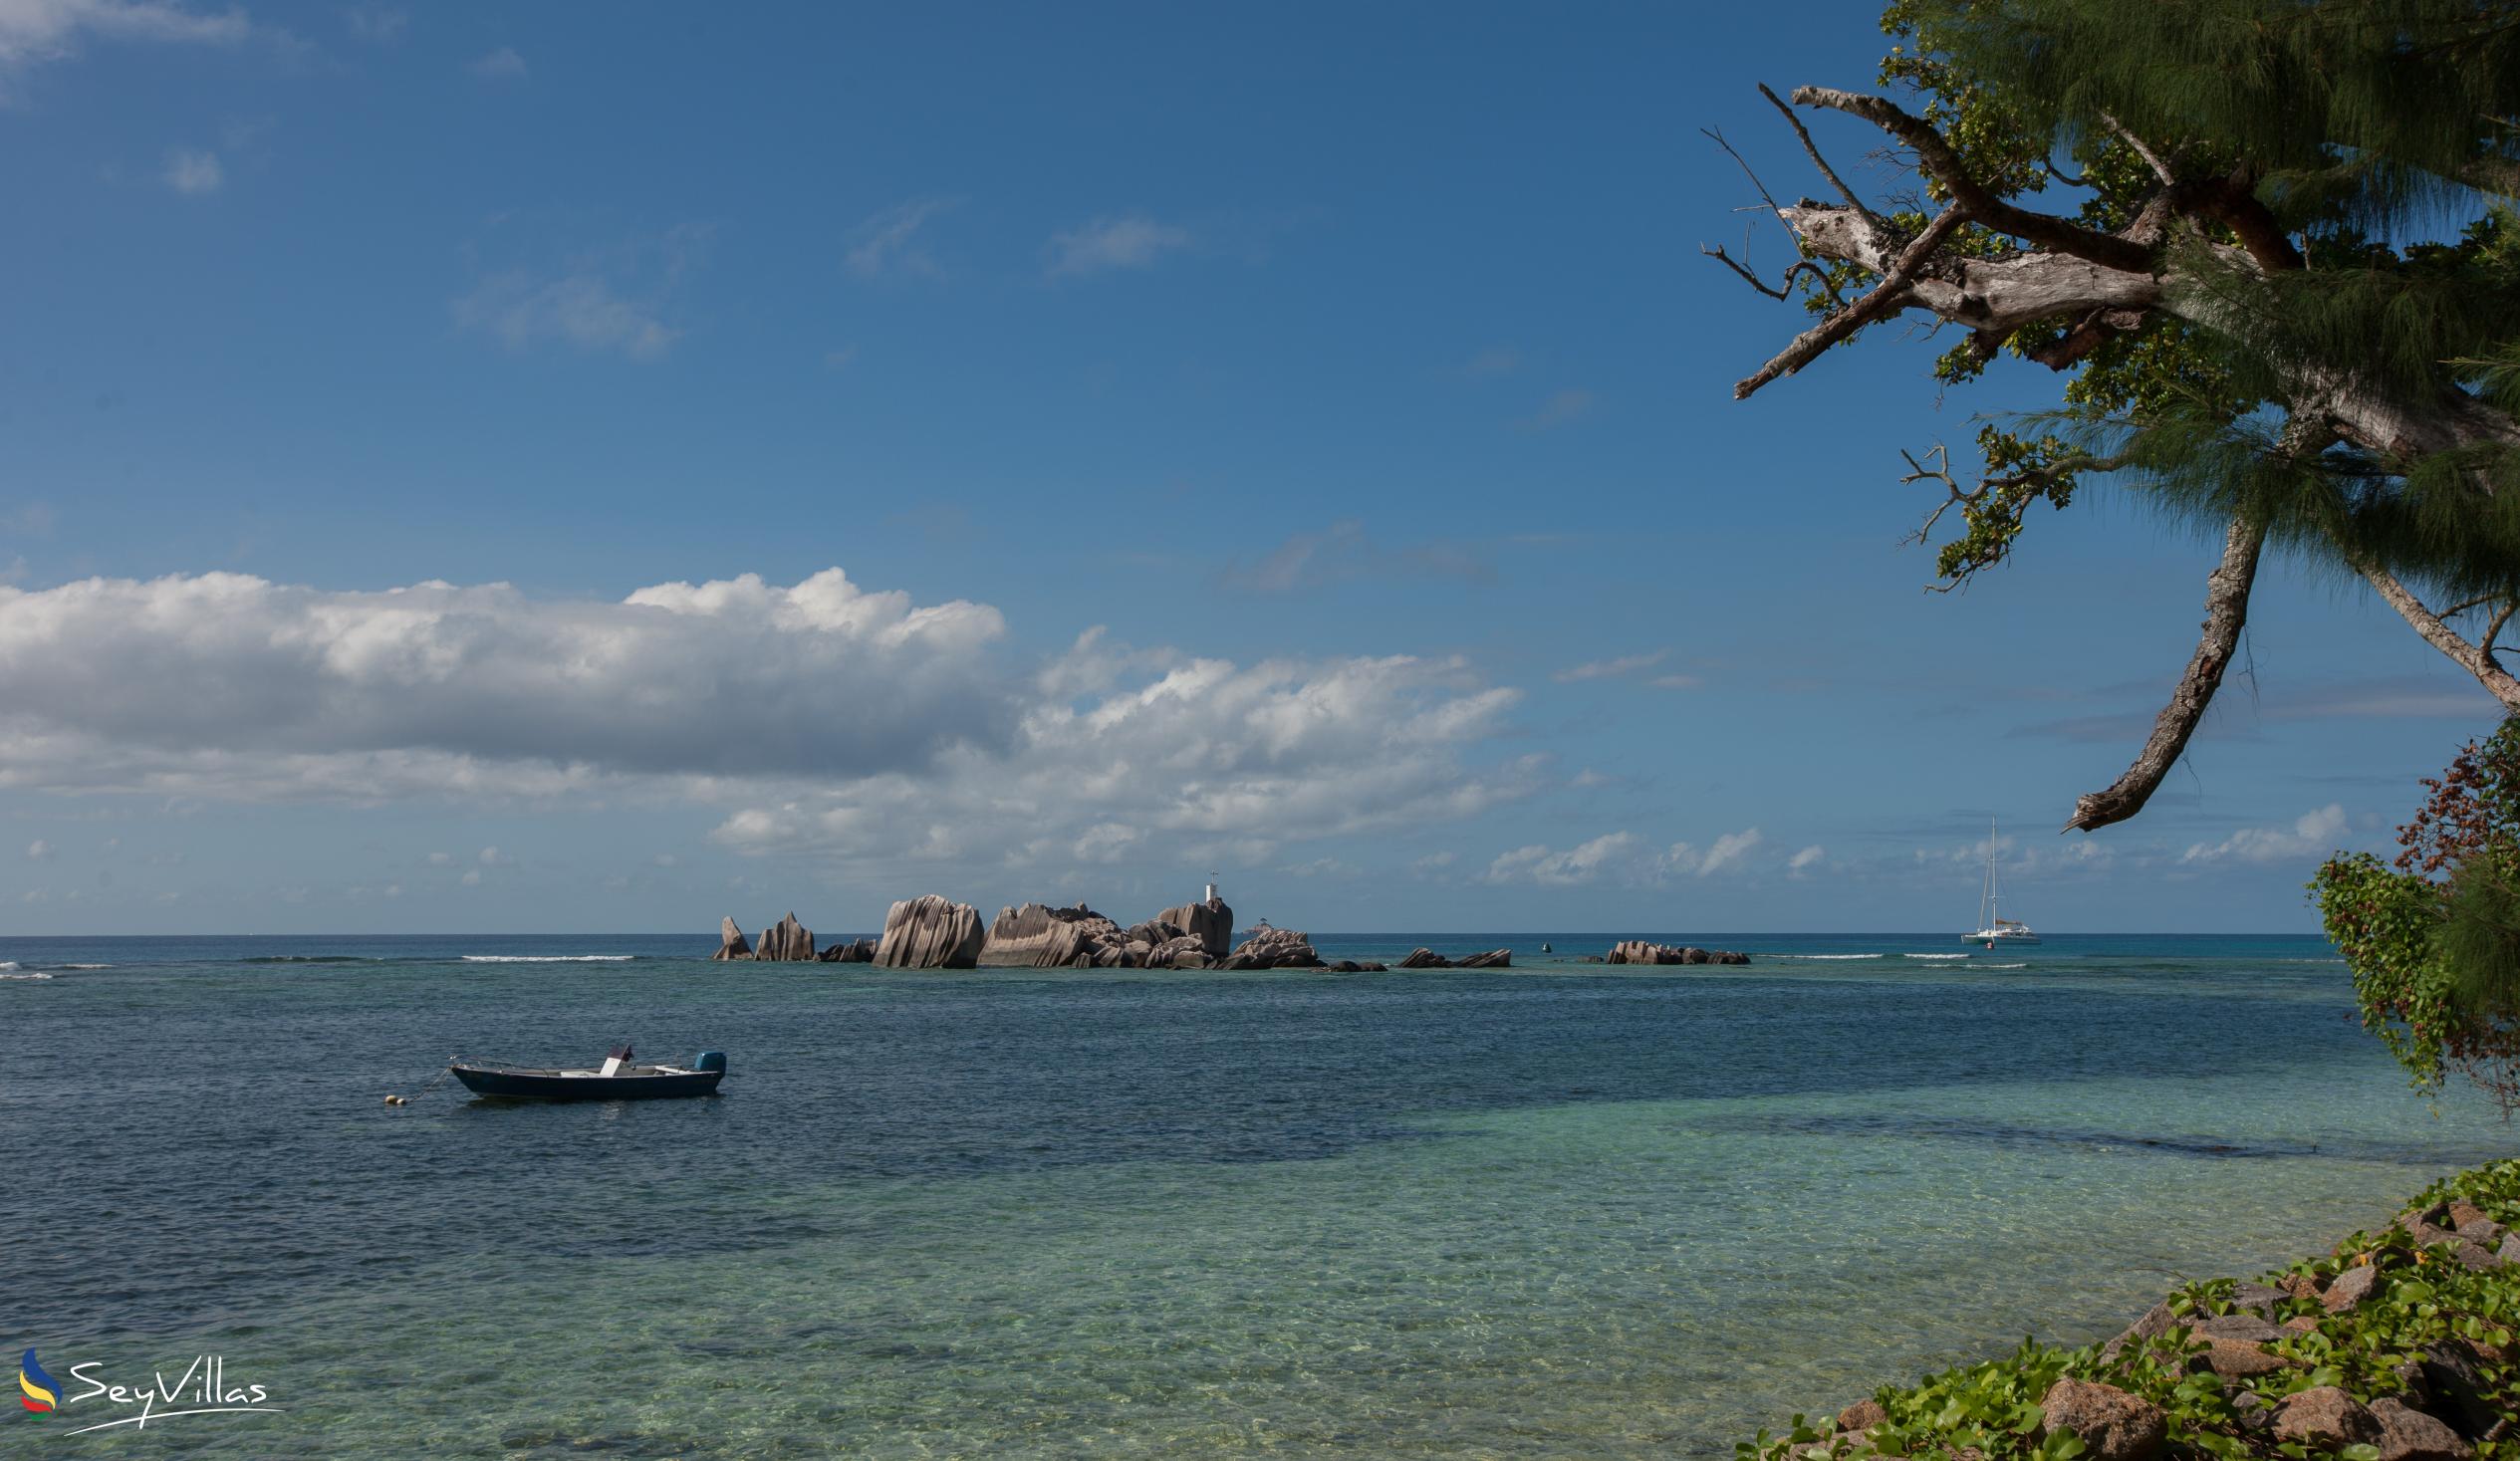 Photo 51: Villa Source D'Argent - Beaches - La Digue (Seychelles)